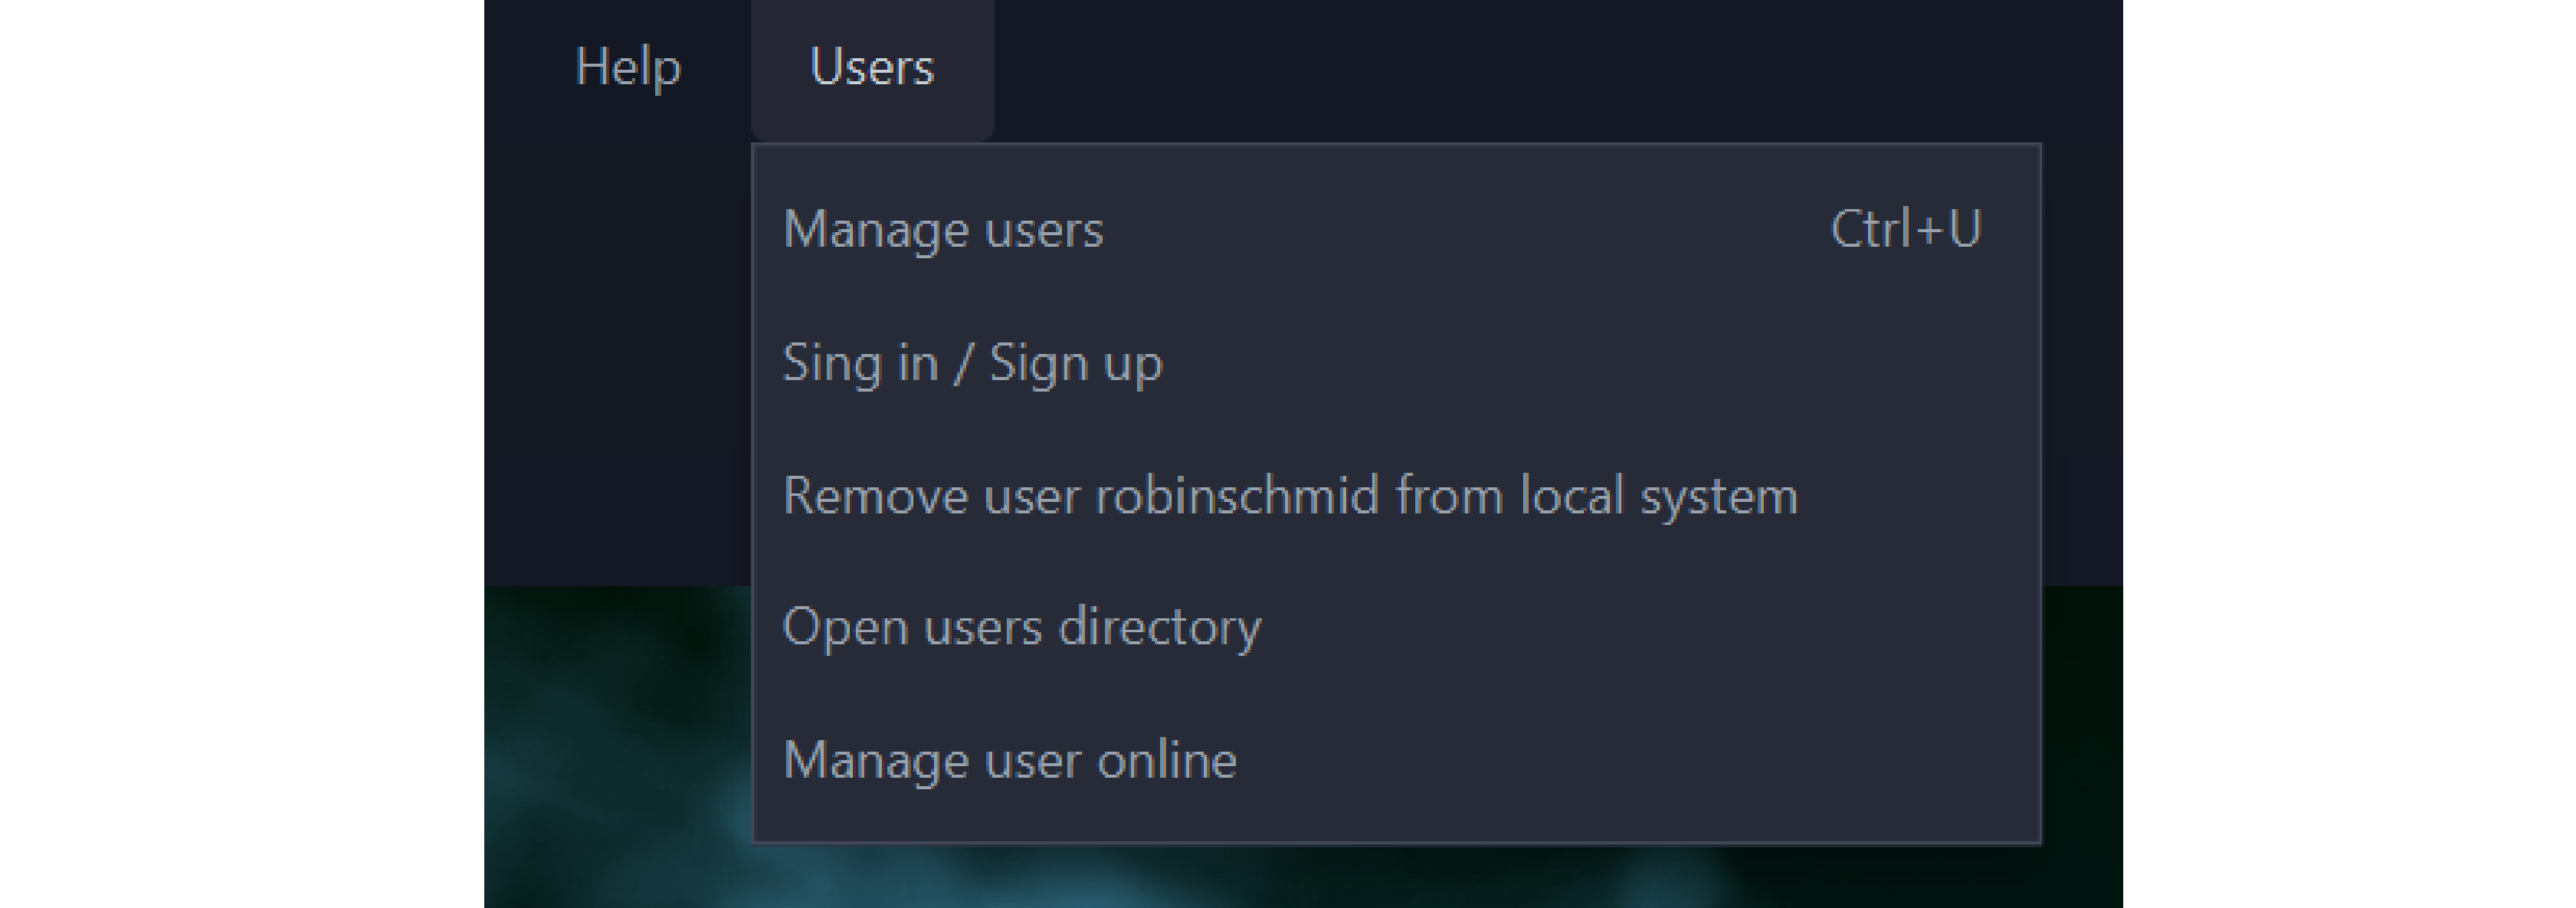 users_menu.png